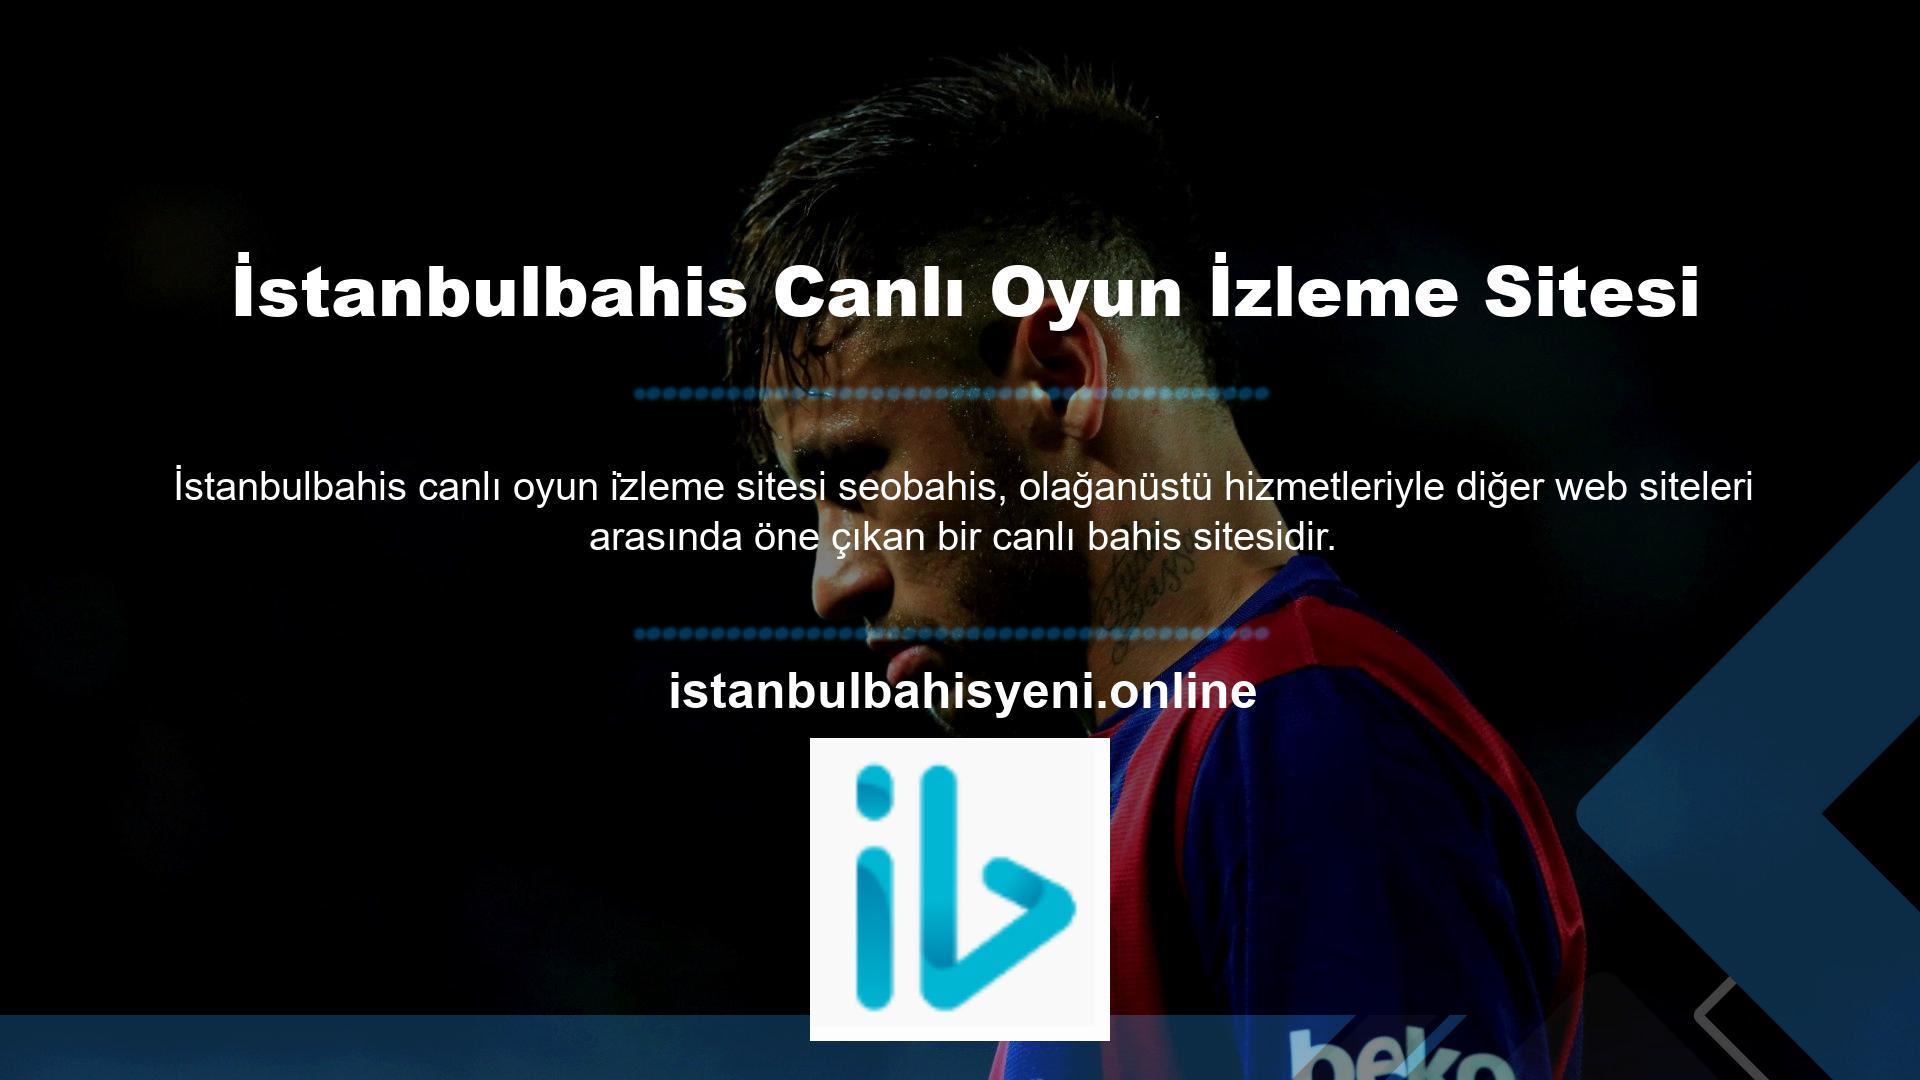 Kullanıcılar, kendilerine sunulan birçok fırsattan biri olan İstanbulbahis TV yayınından tüm maçları canlı olarak izleyebilirler